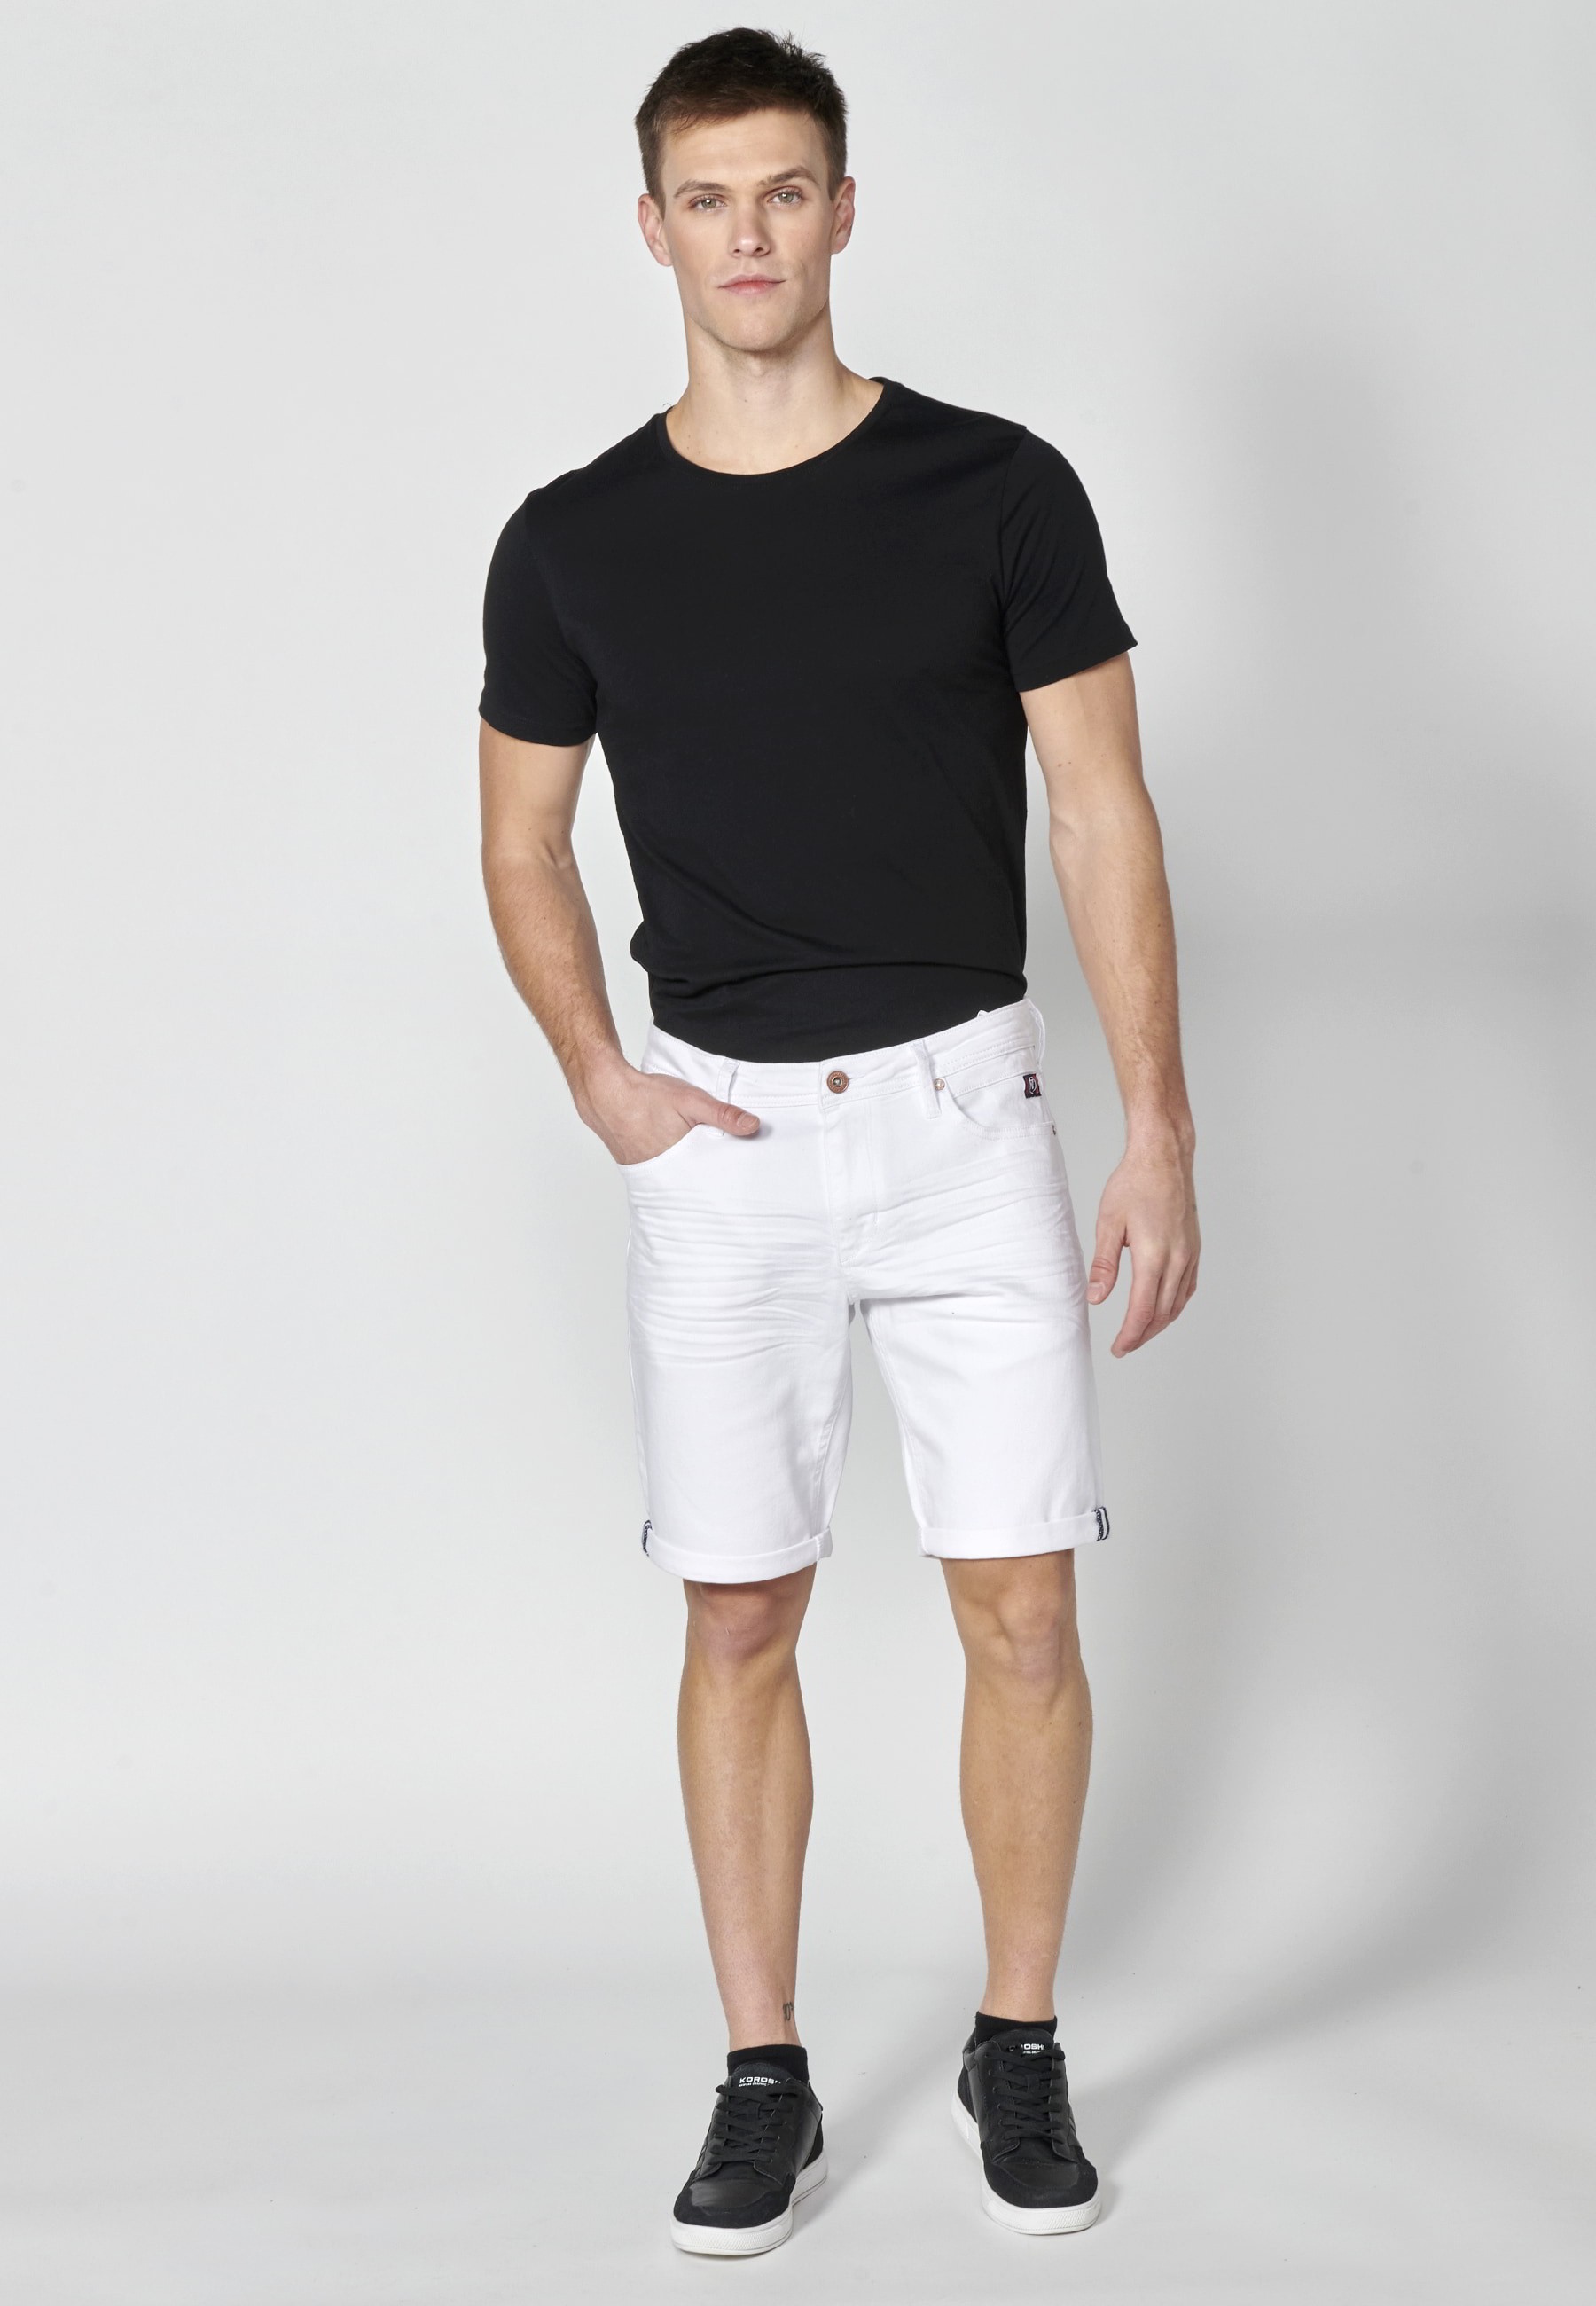 Pantalón corto Bermuda Vaquera Stretch Regular Fit con cuatro bolsillos color Blanco para Hombre